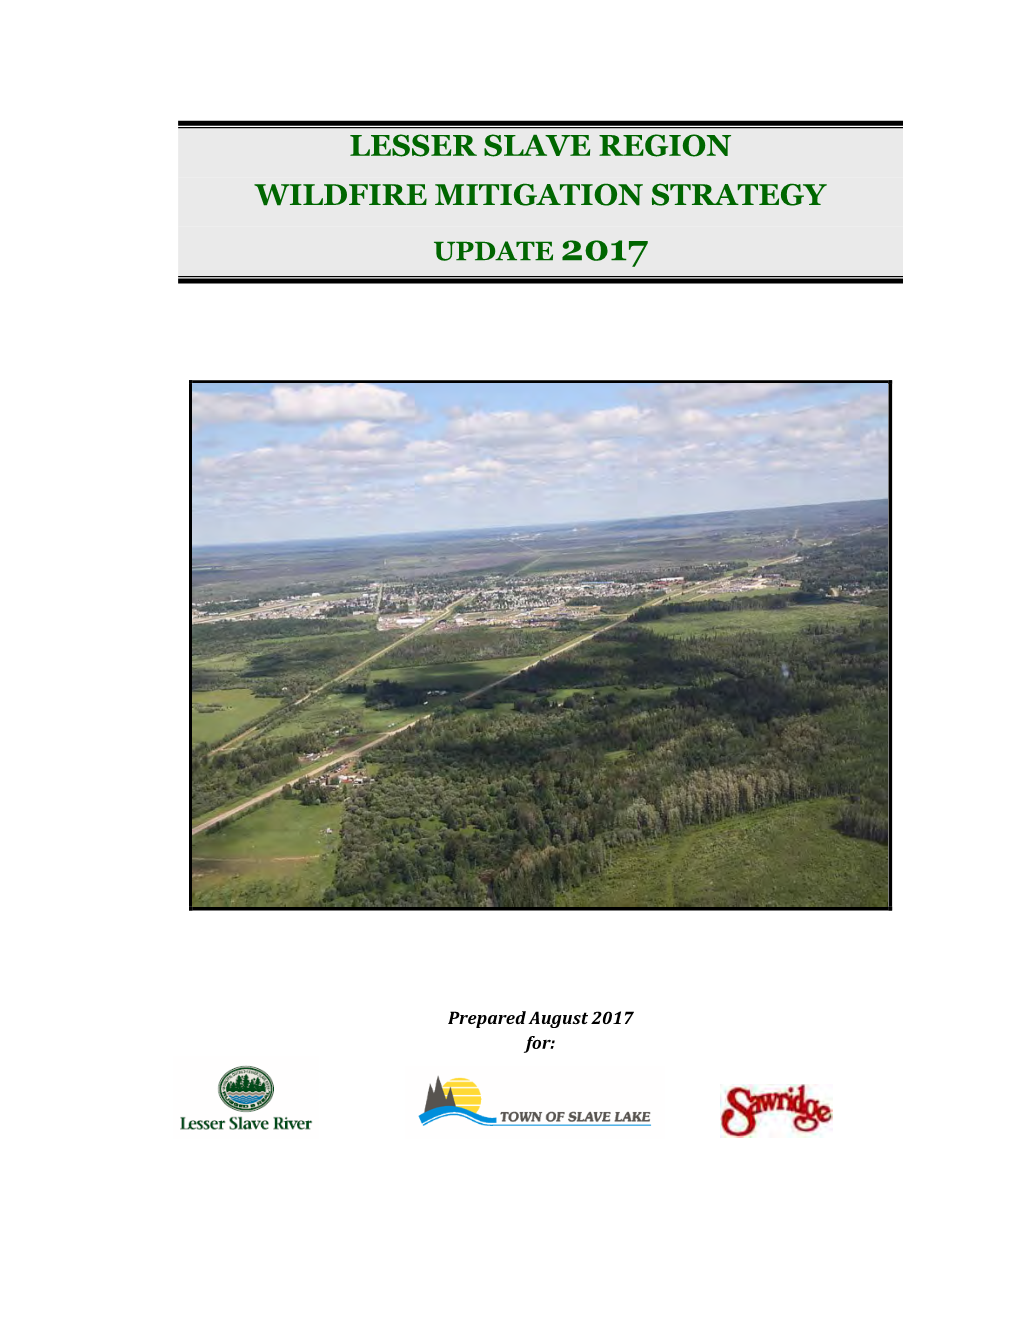 Lesser Slave Region Wildfire Mitigation Strategy Update 2017